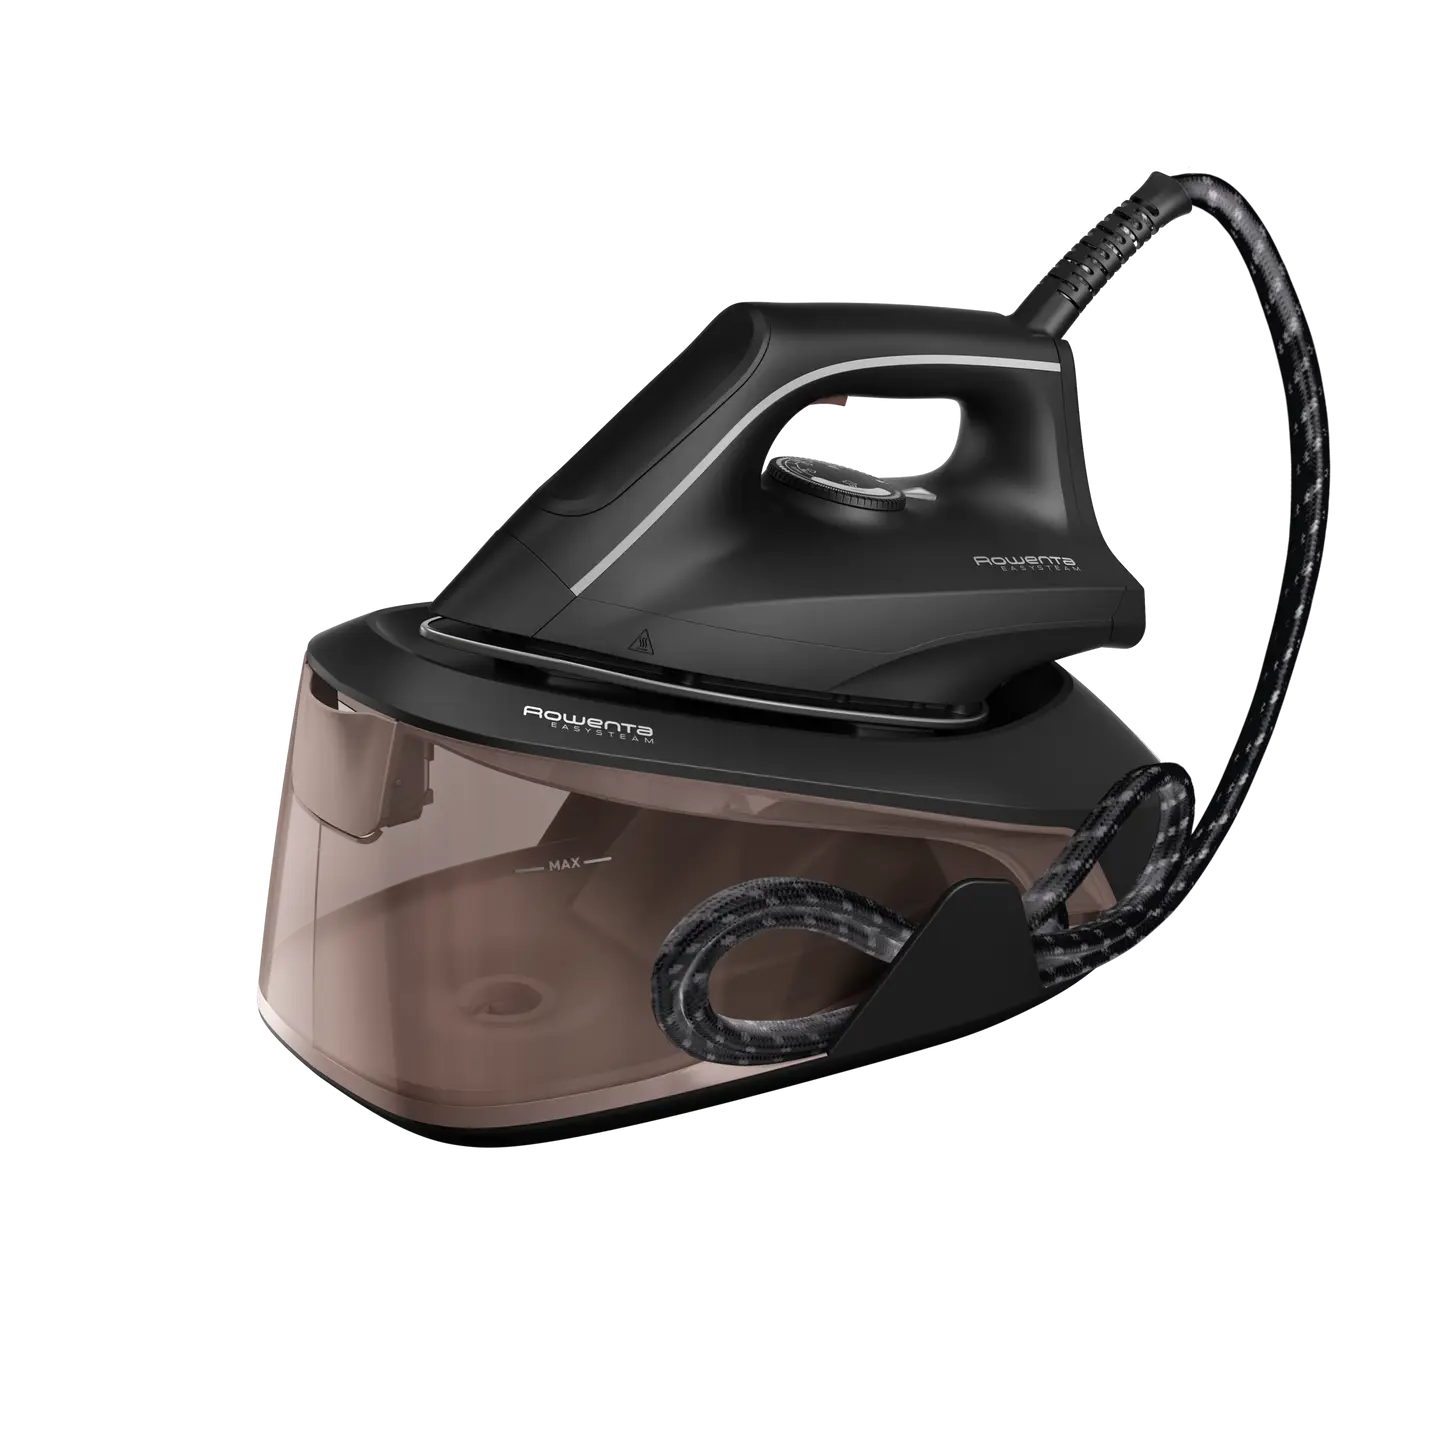 Ricambi e accessori Ferri da stiro Rowenta Easy Steam - VR5120F0